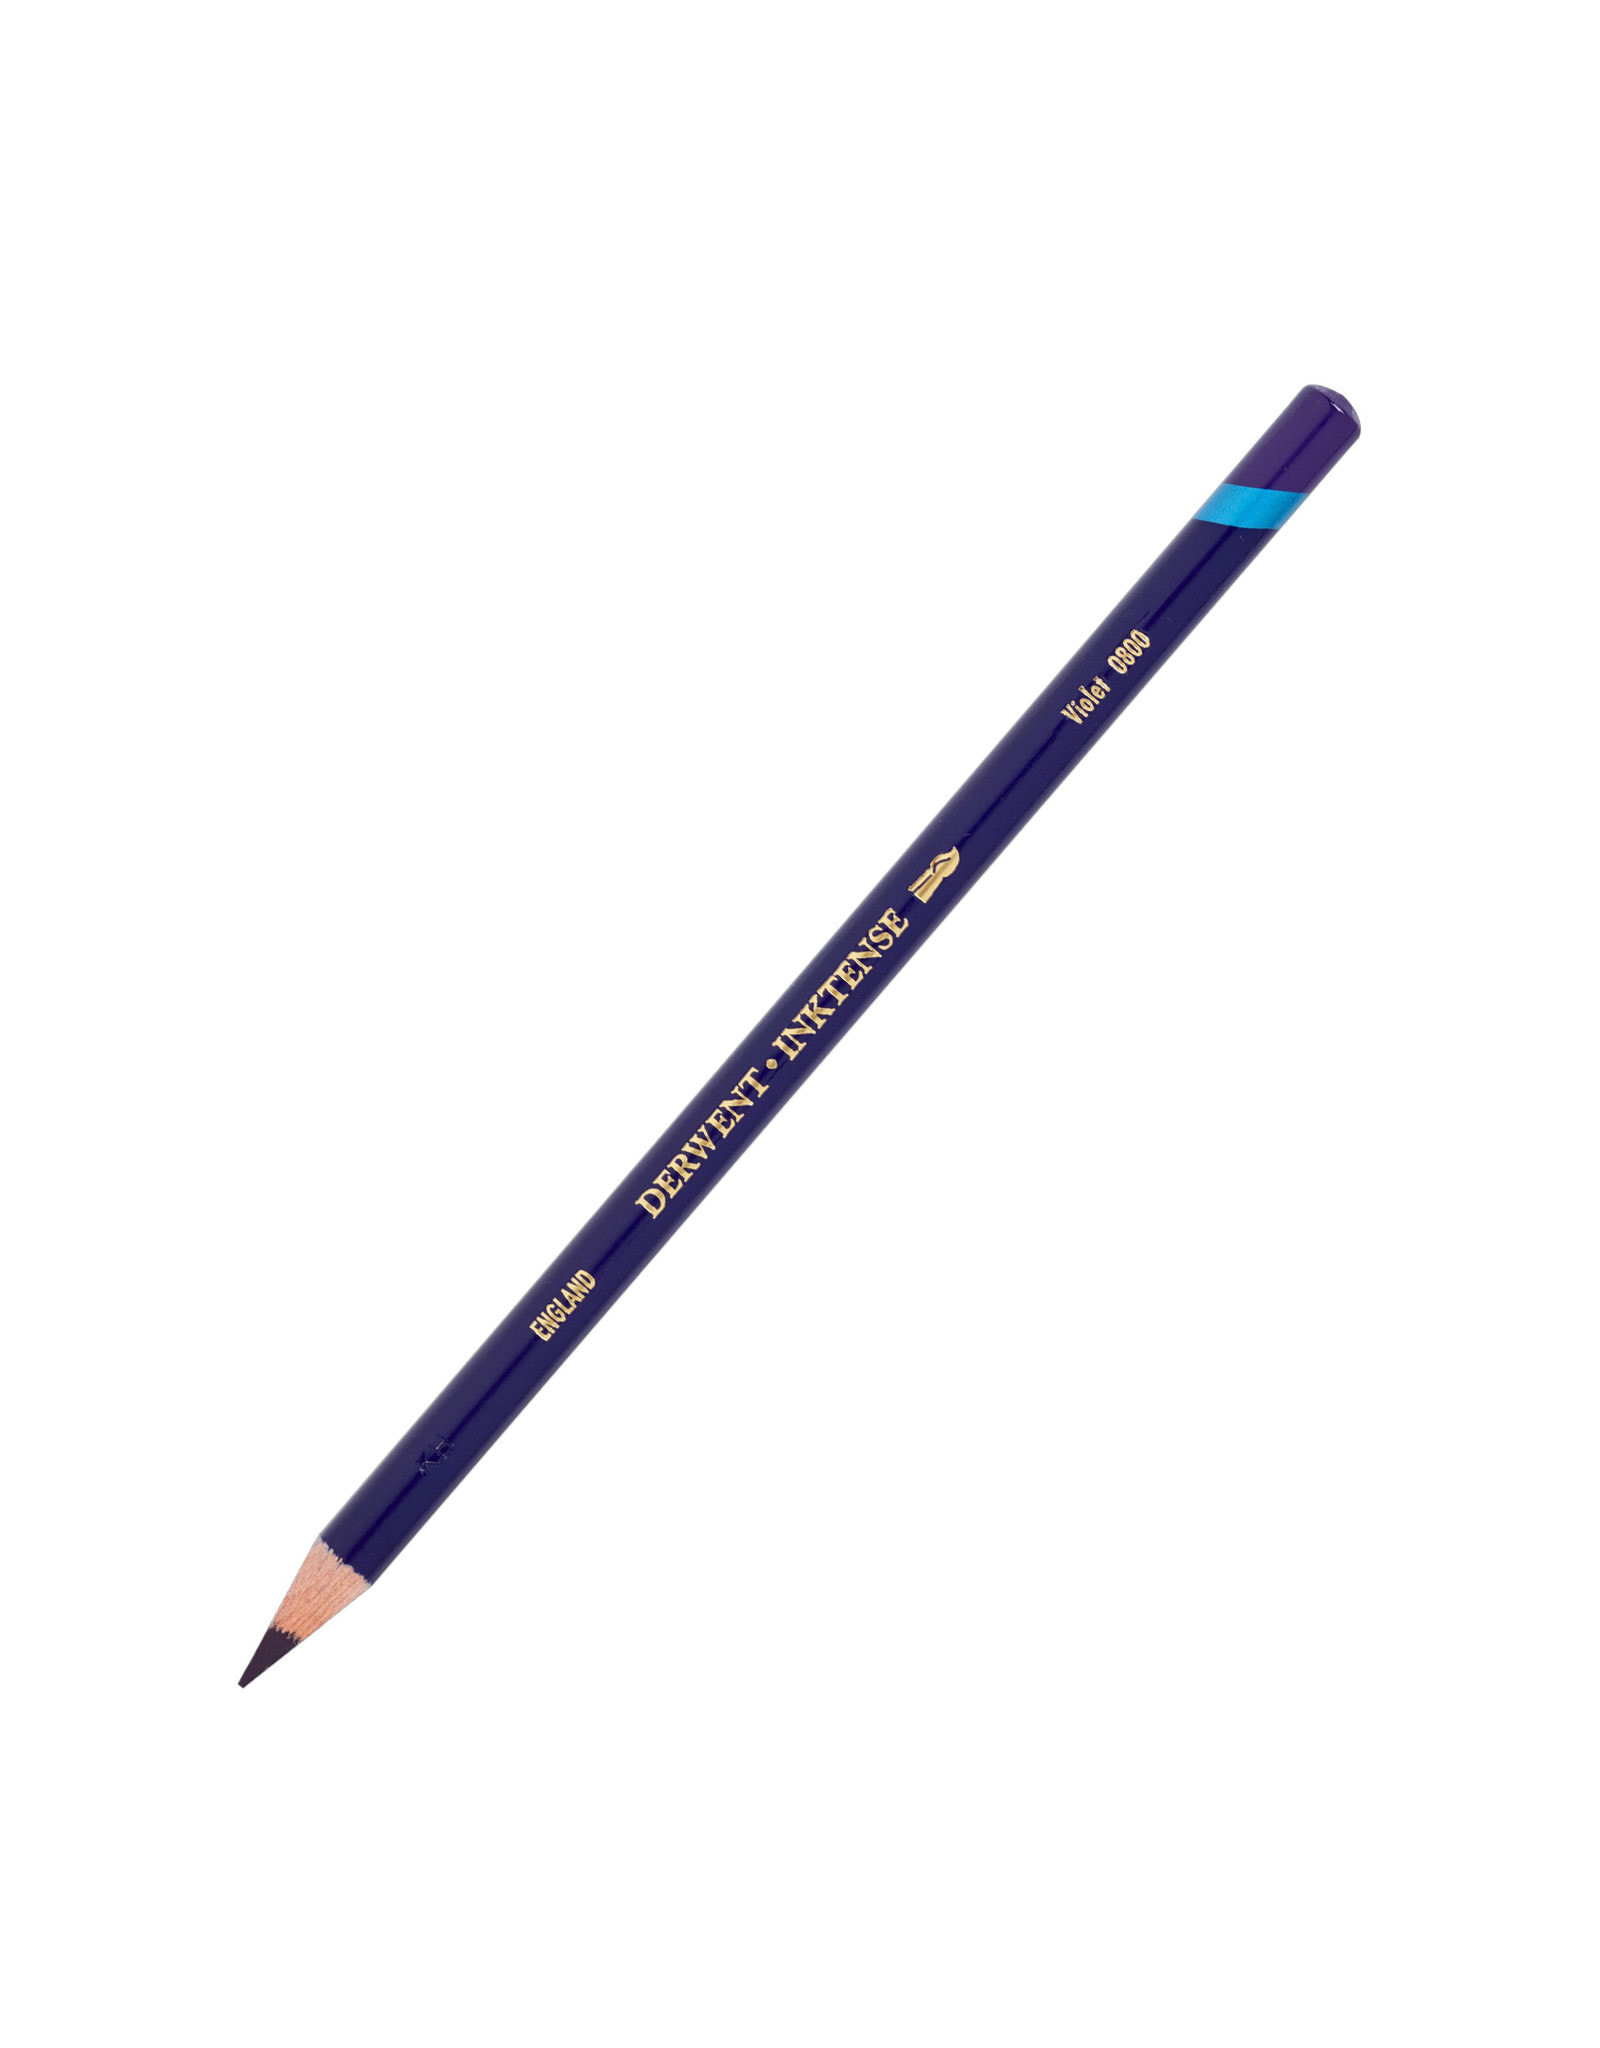 Derwent Derwent Inktense Pencil, Violet